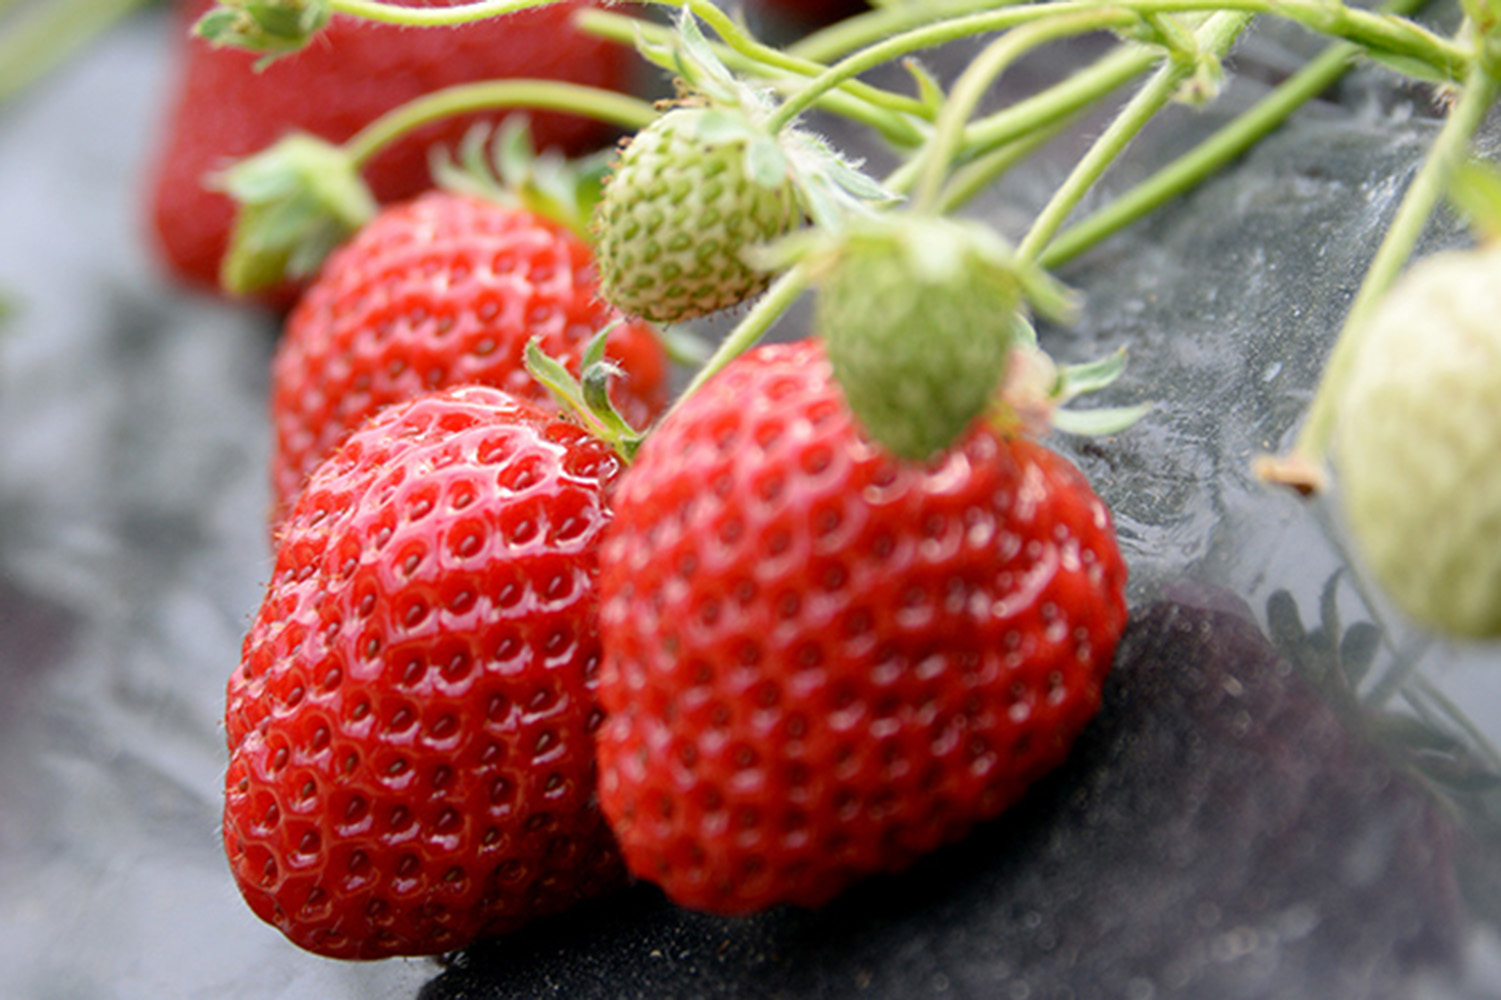 Strawberry picking (Kishigawa Tourist Strawberry Picking Farm)